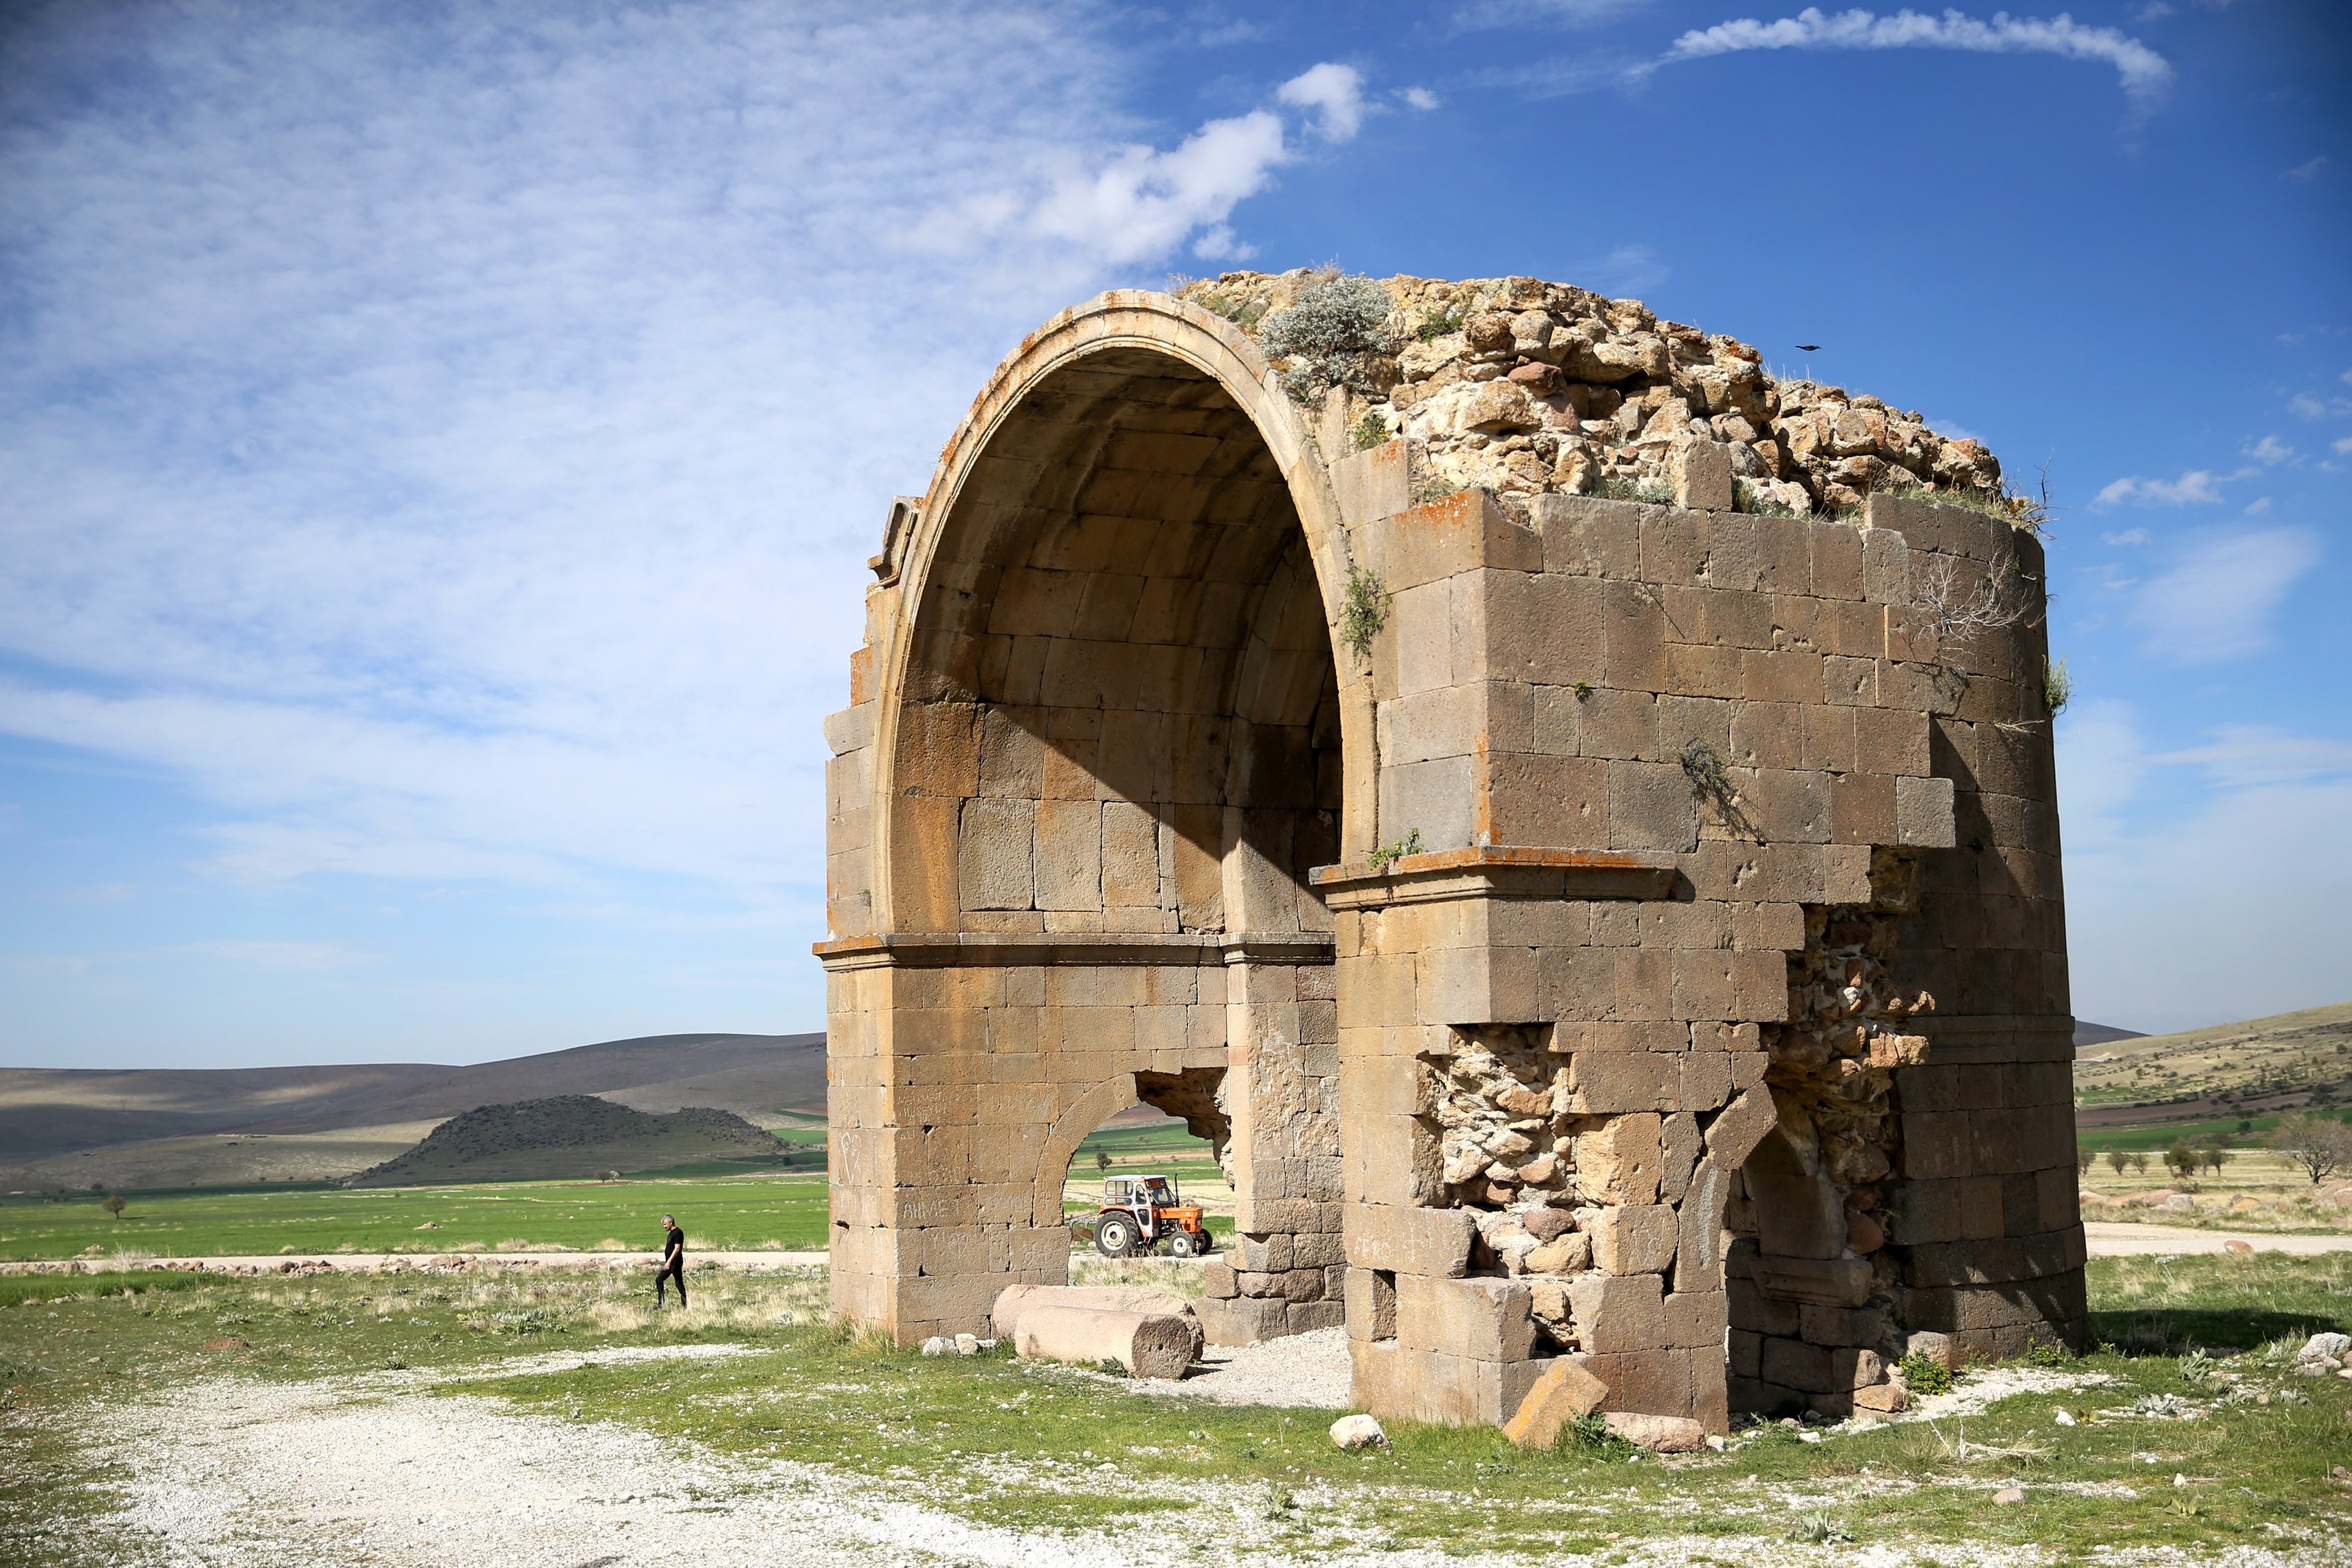 Türkiye'nin Karadağ bölgesi zengin bir dini mimari mirasına sahiptir